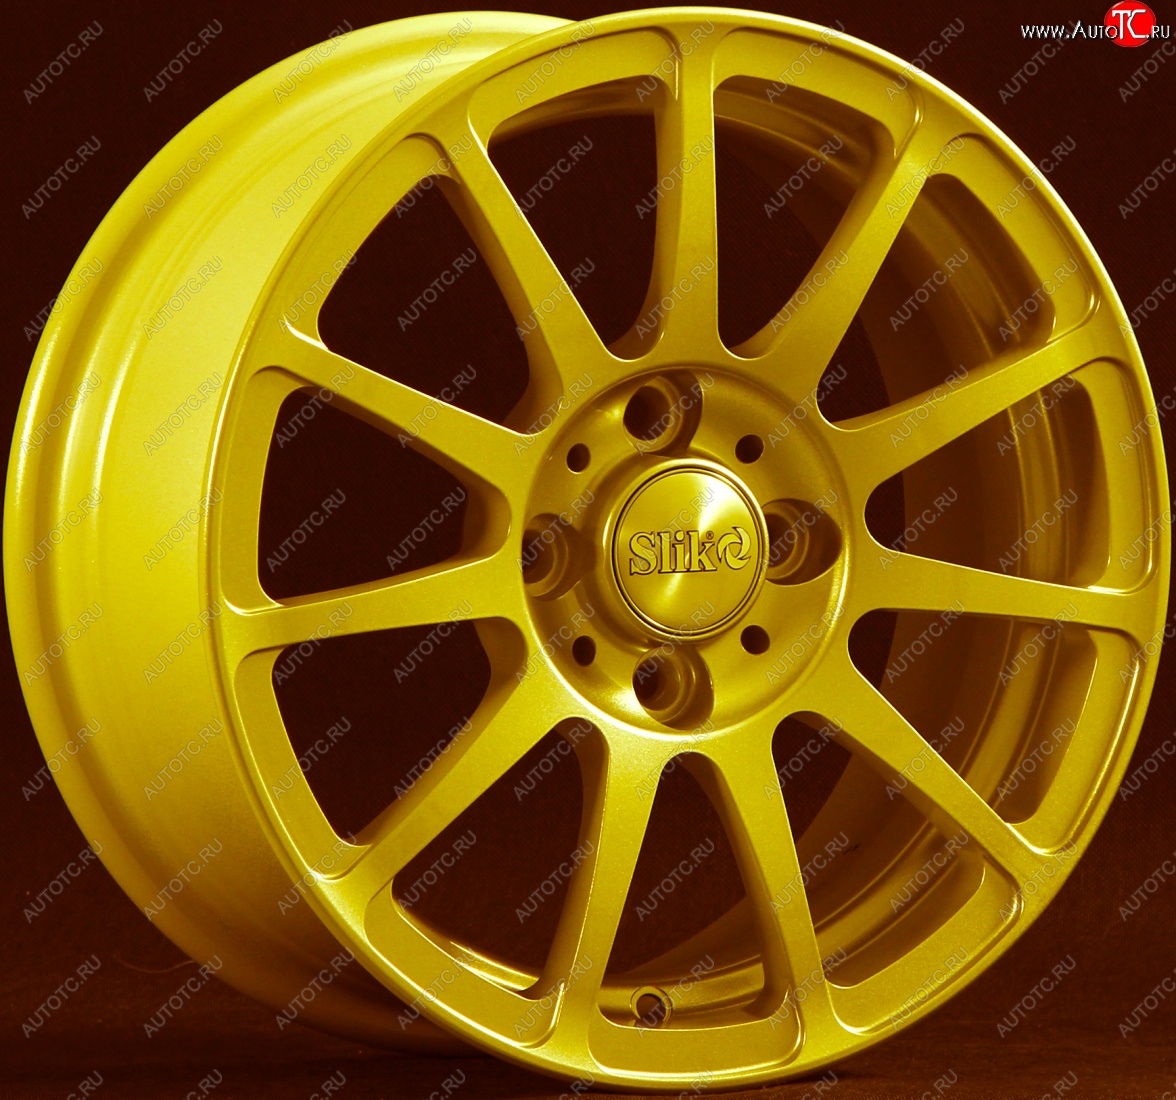 12 849 р. Кованый диск Slik Classik 5.5x14 (ярко-желтый) Nissan Latio N17 седан правый руль дорестайлинг (2012-2014) 4x100.0xDIA60.0xET40.0 (Цвет: ярко-желтый)